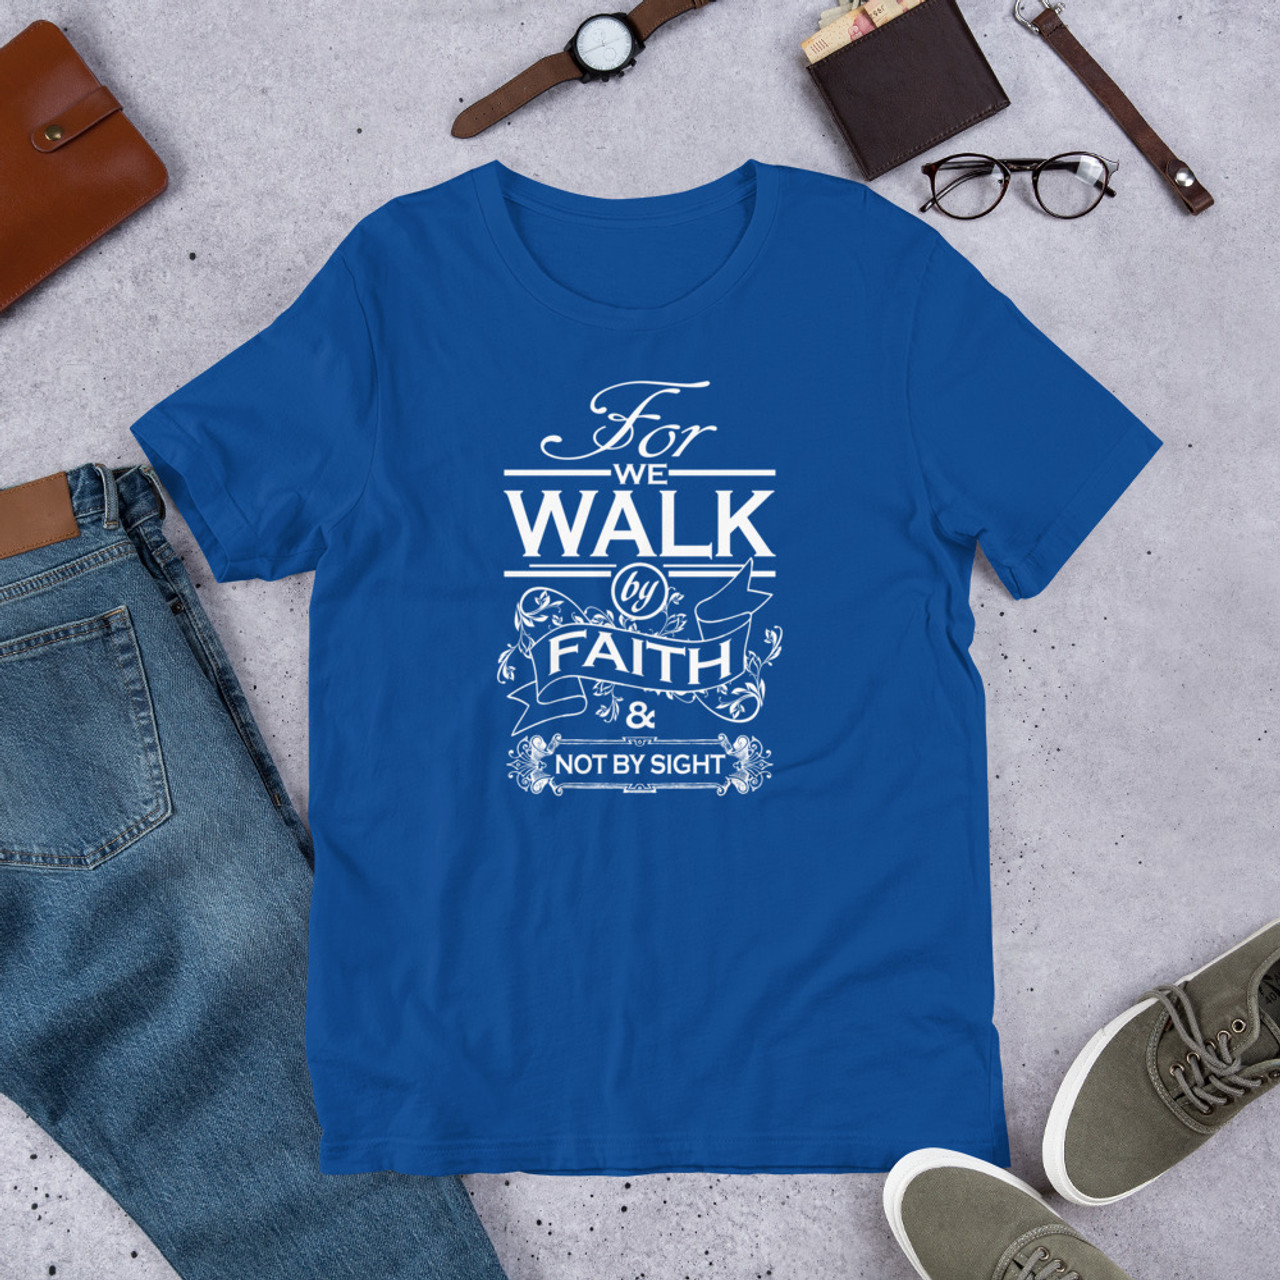 True Royal T-Shirt - Bella + Canvas 3001 Walk By Faith